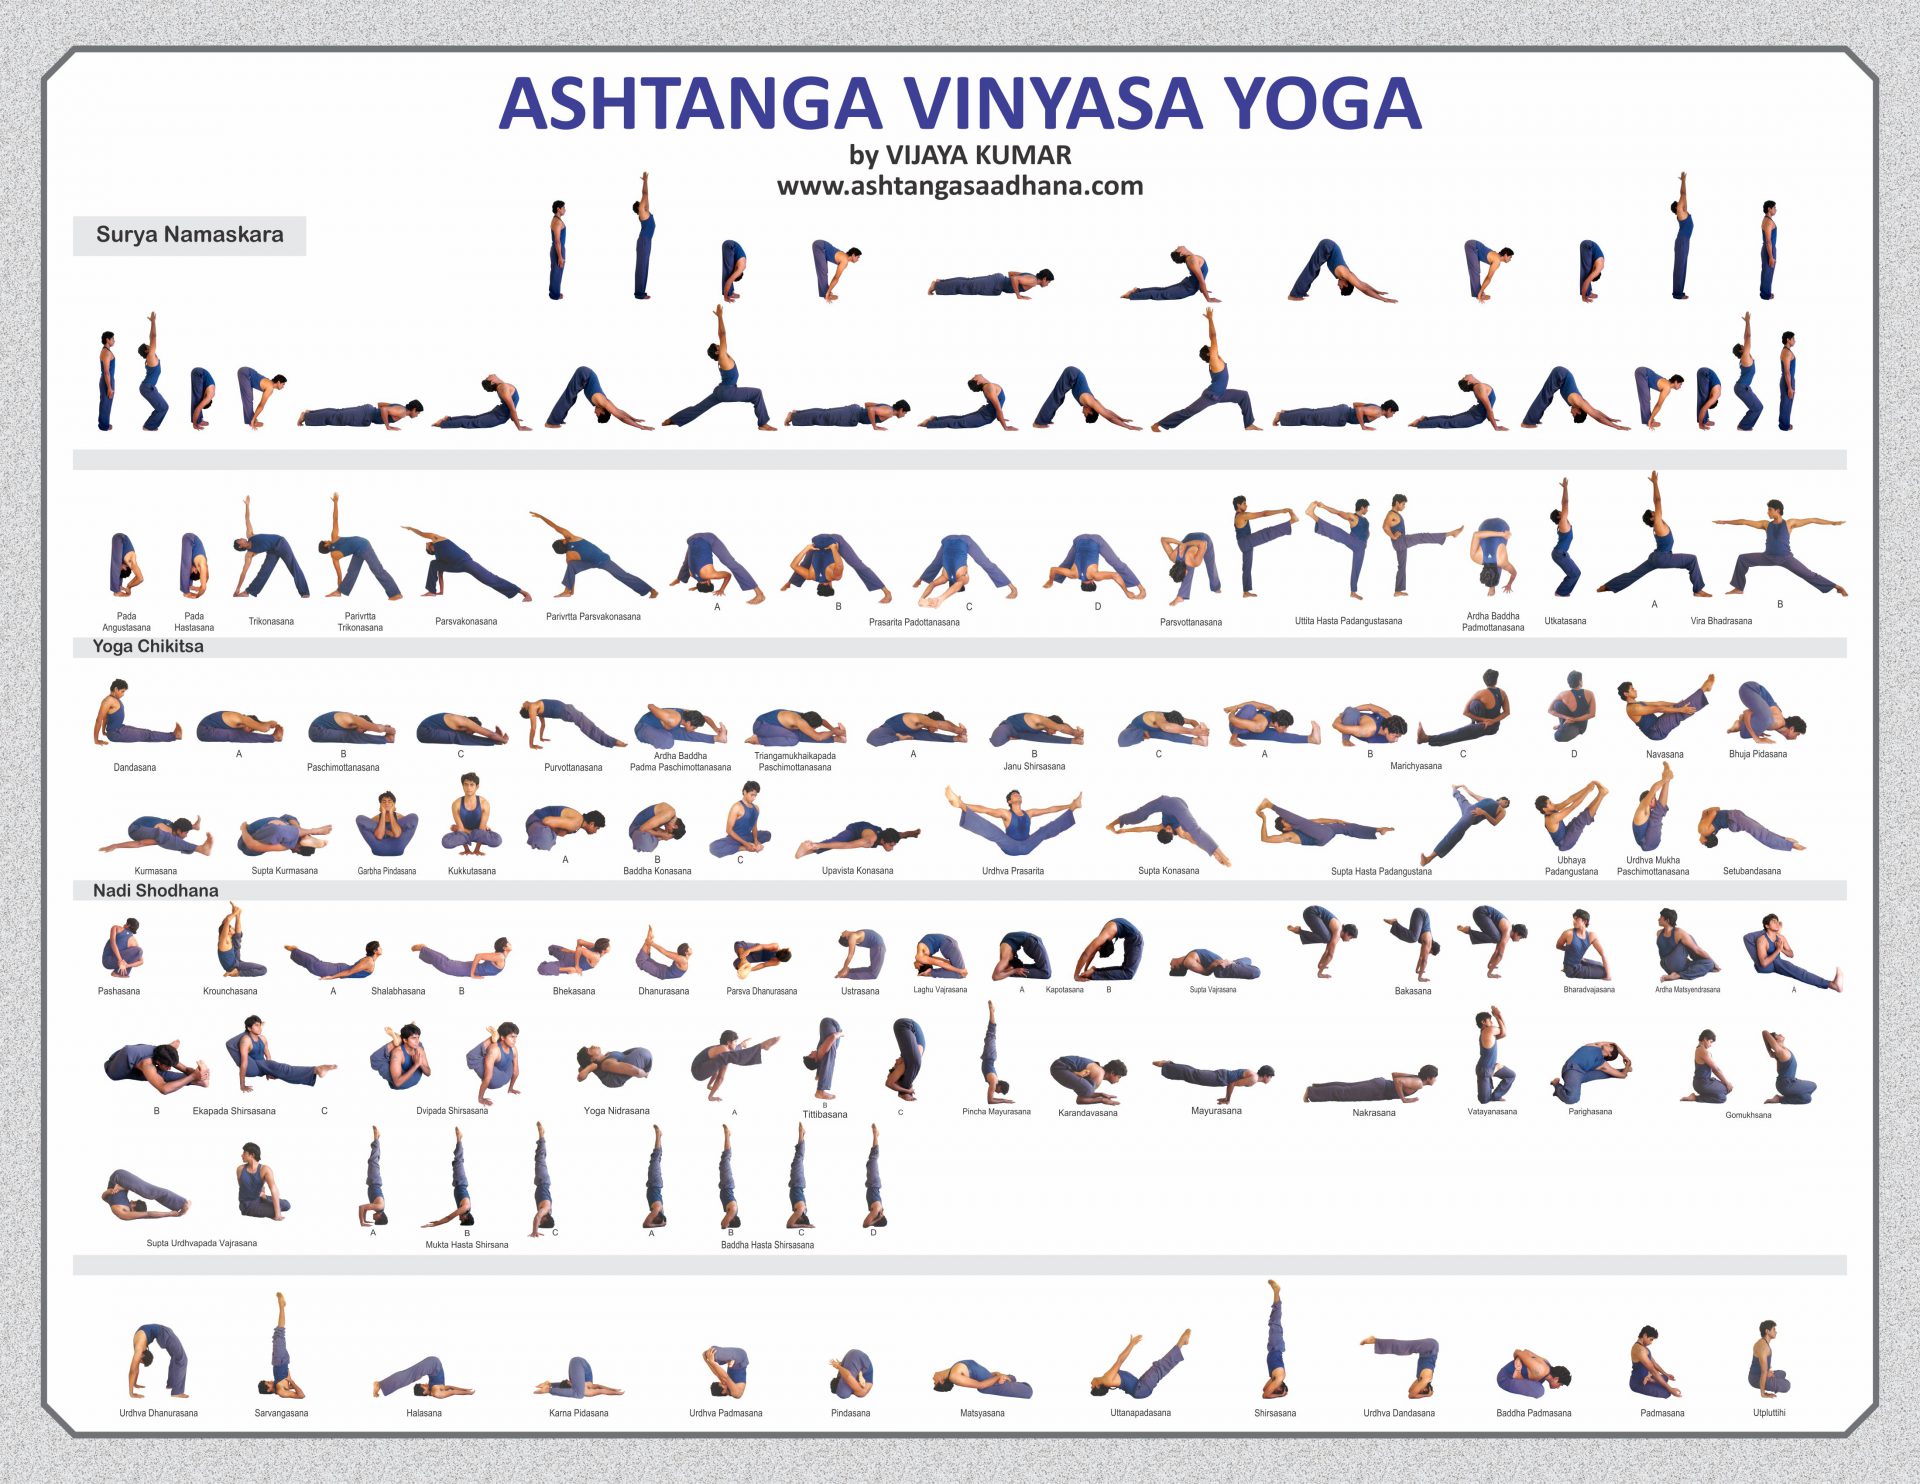 https://www.katkarojkova.cz/wp-content/uploads/2019/05/ashtanga-vinyasa-big-chart.jpg